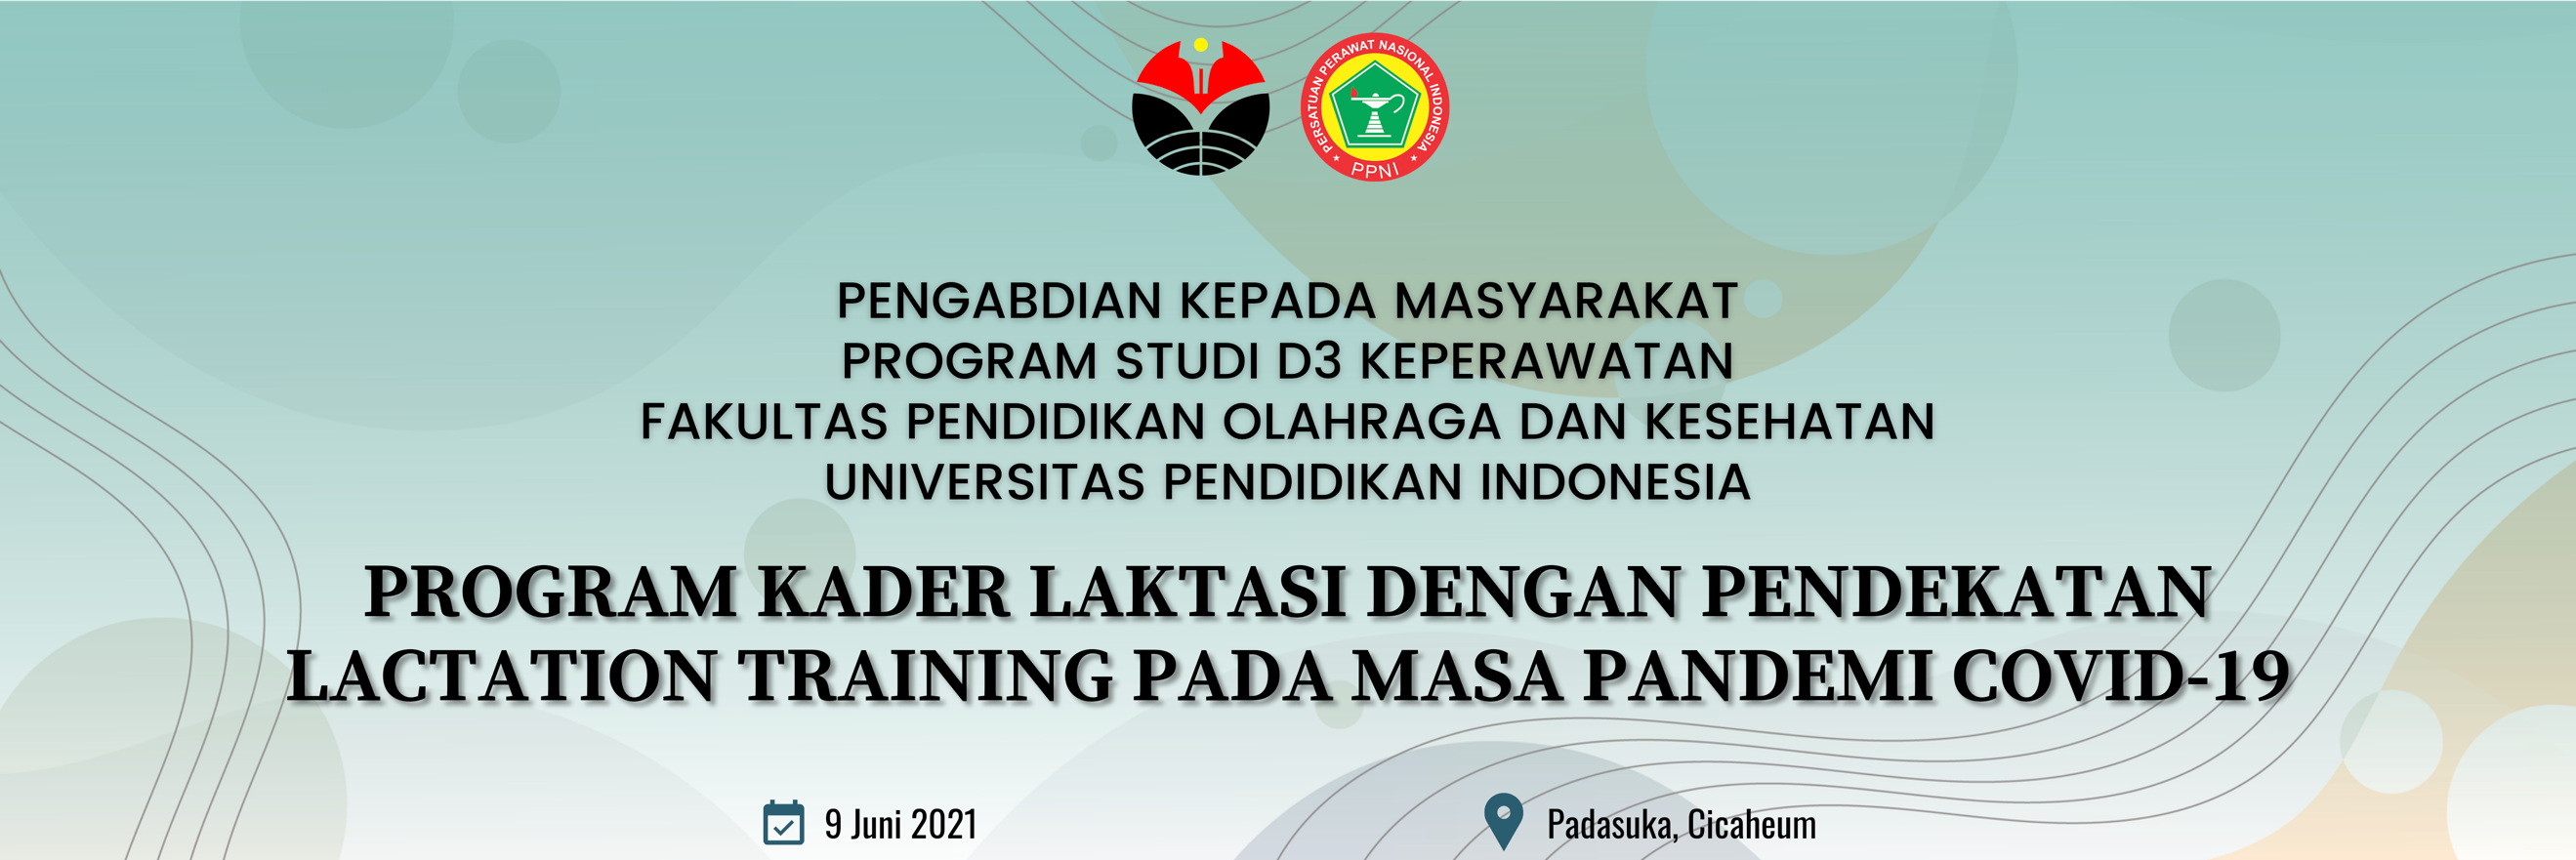 Kader laktasi  di Padasuka Kota Bandung mendapat peningkatan manajemen laktasi pada masa pandemi COVID-19 guna menjaga ketahanan keluarga.